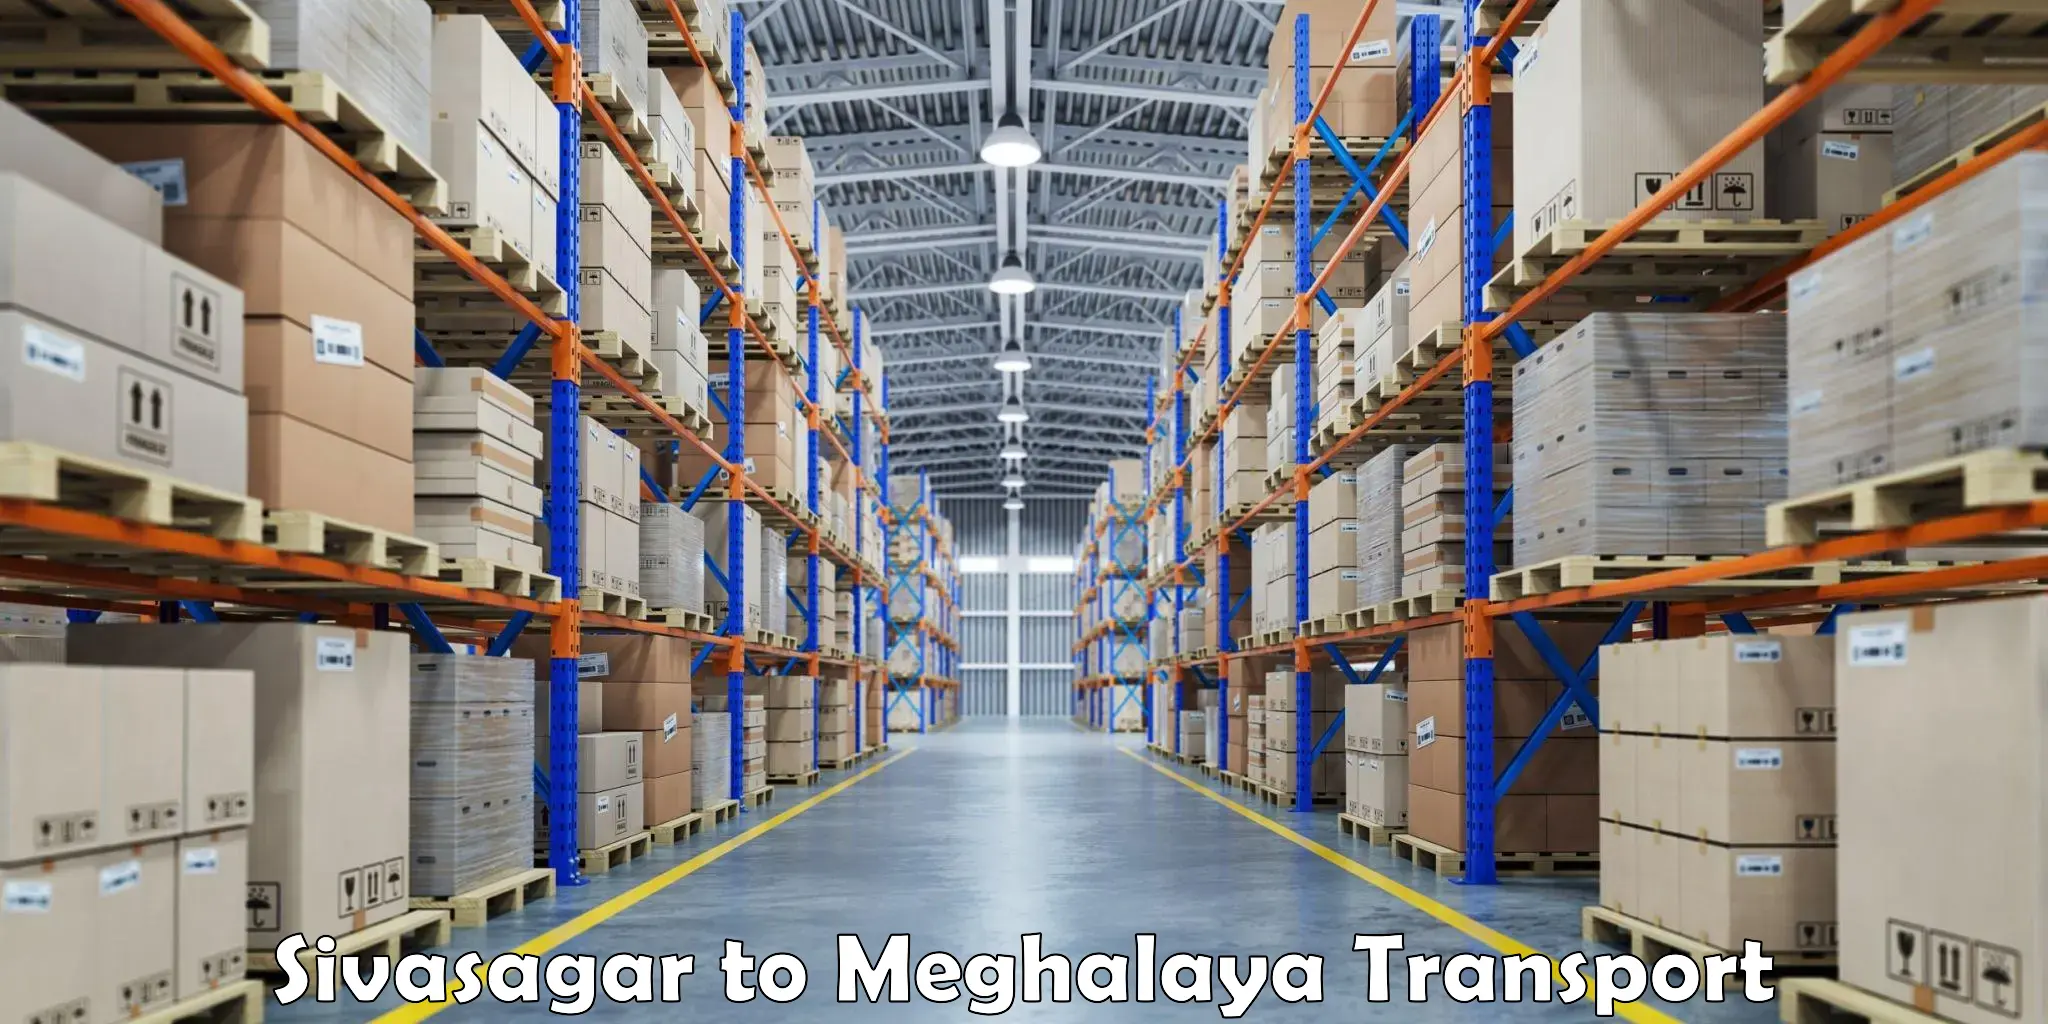 Transport services Sivasagar to Cherrapunji